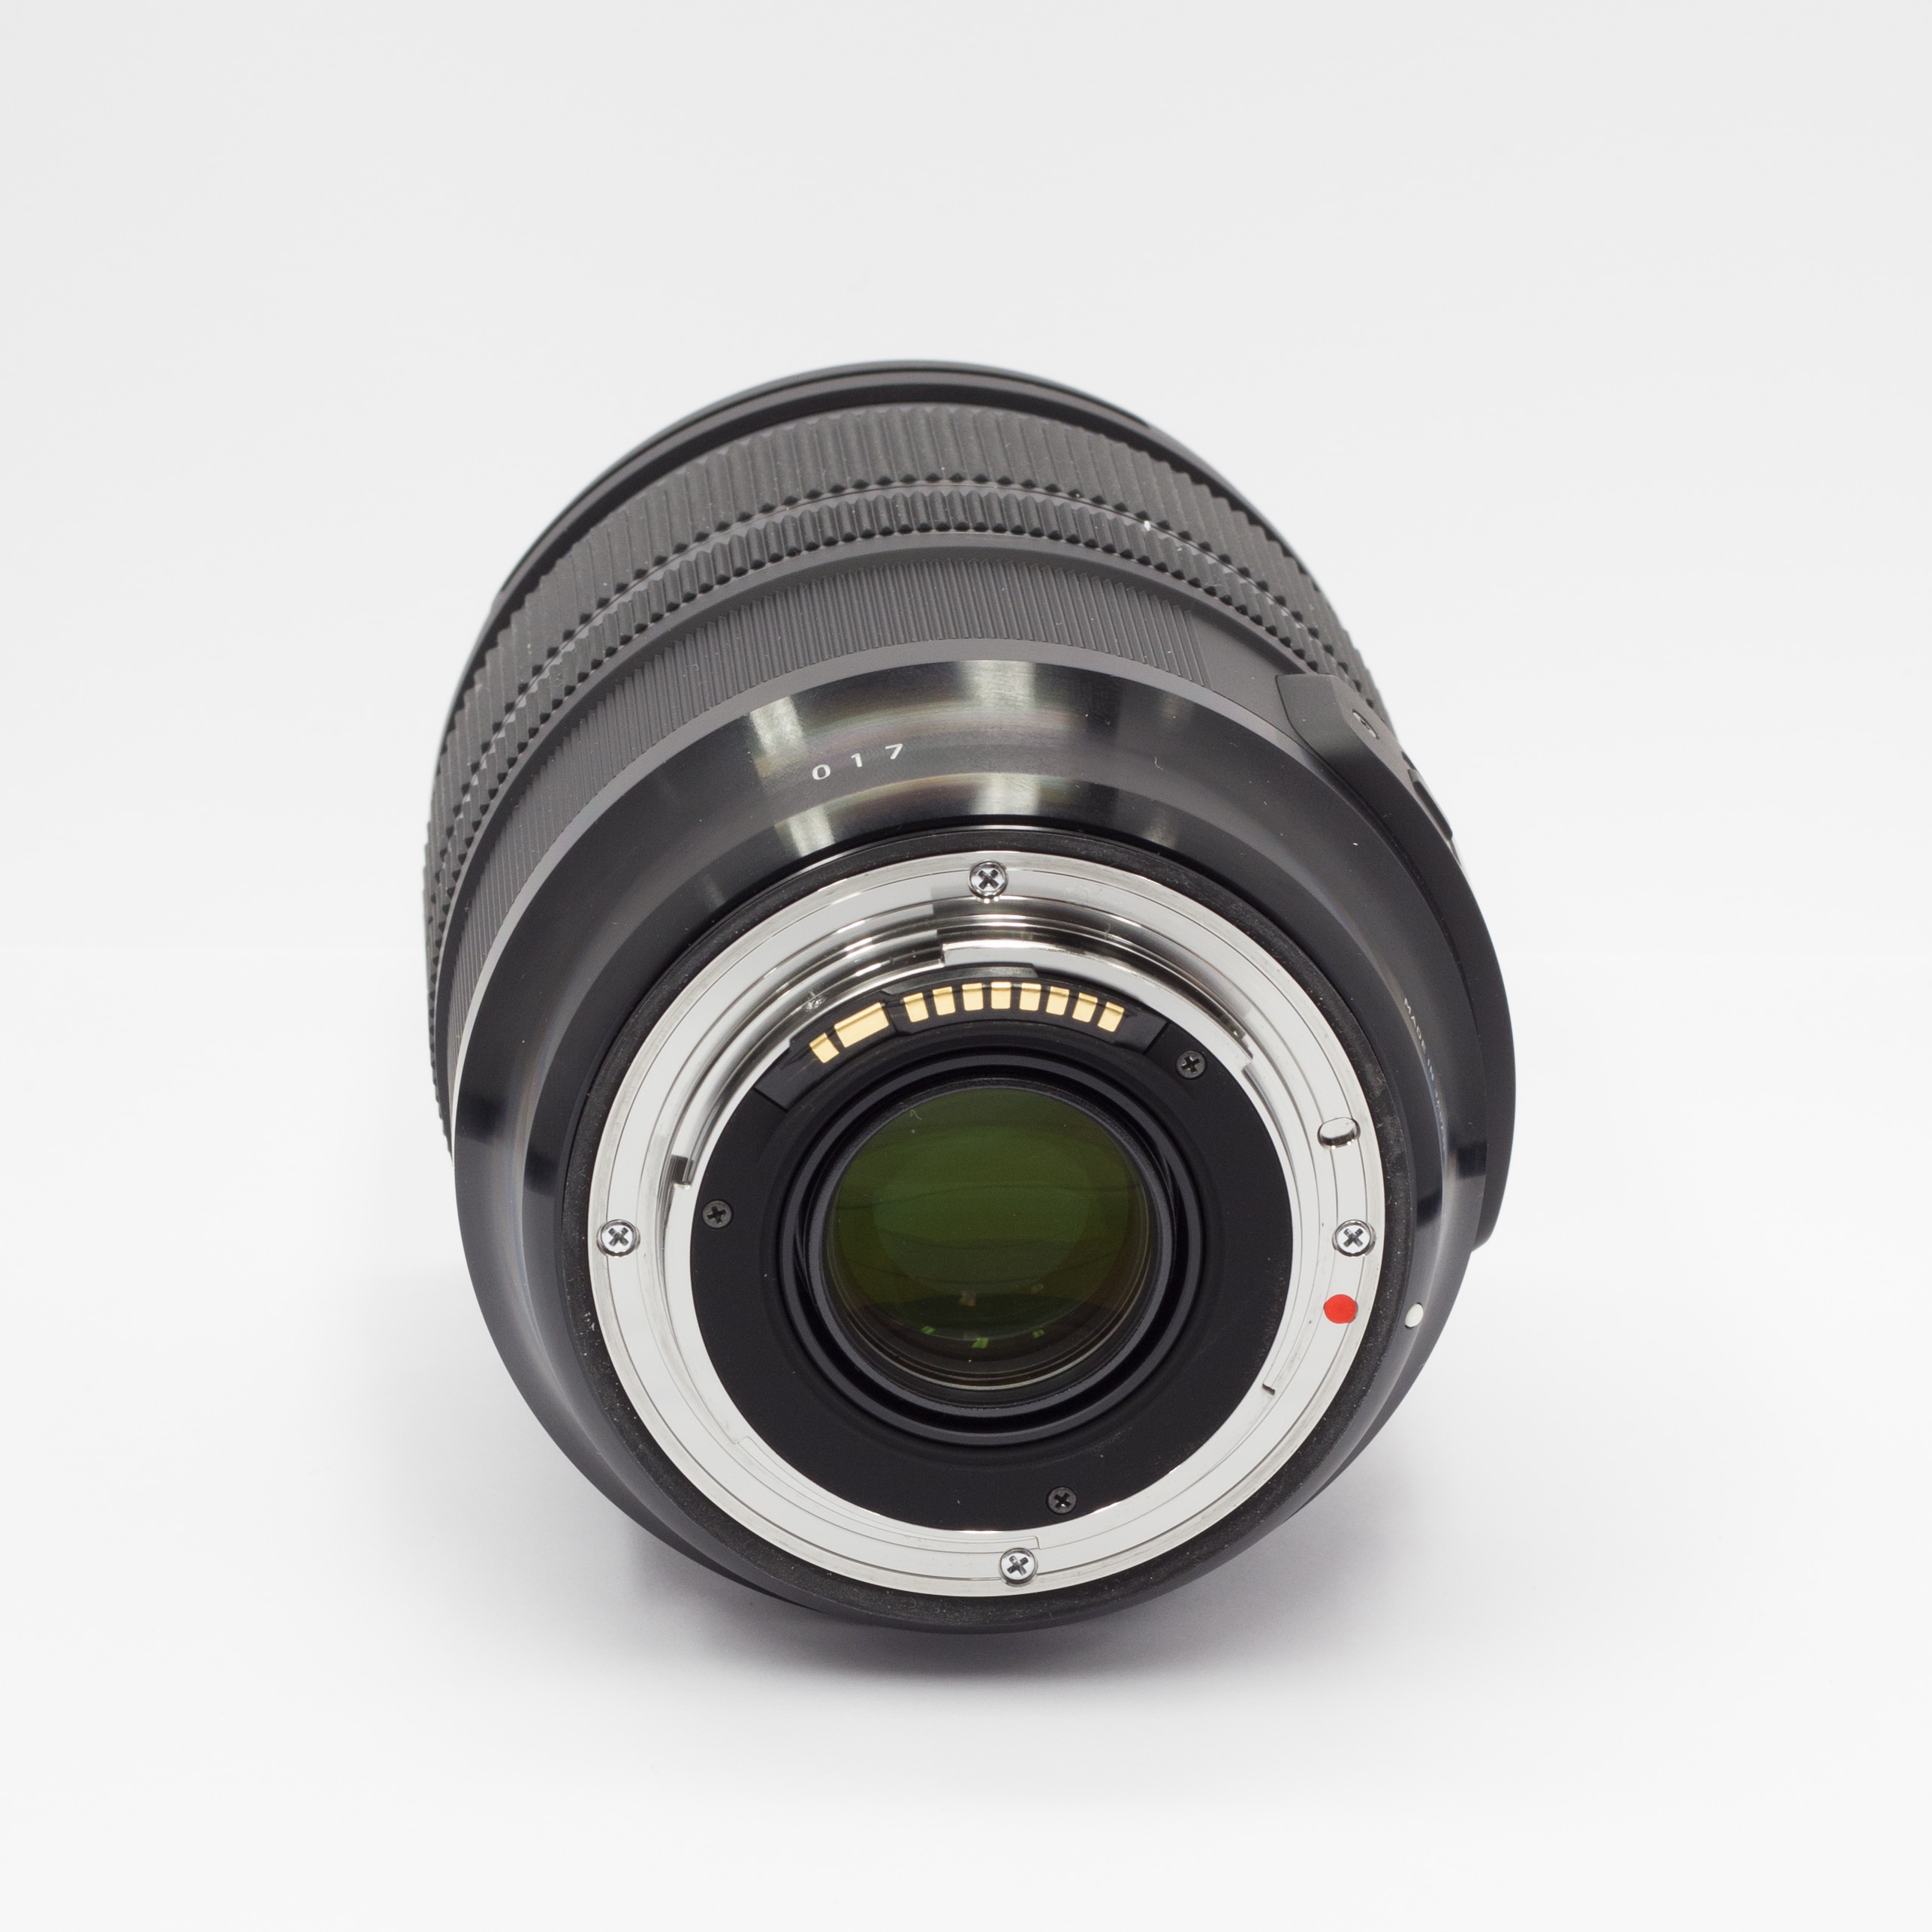 Sigma 24-70mm f/2,8 DG OS HSM Art till Nikon AF